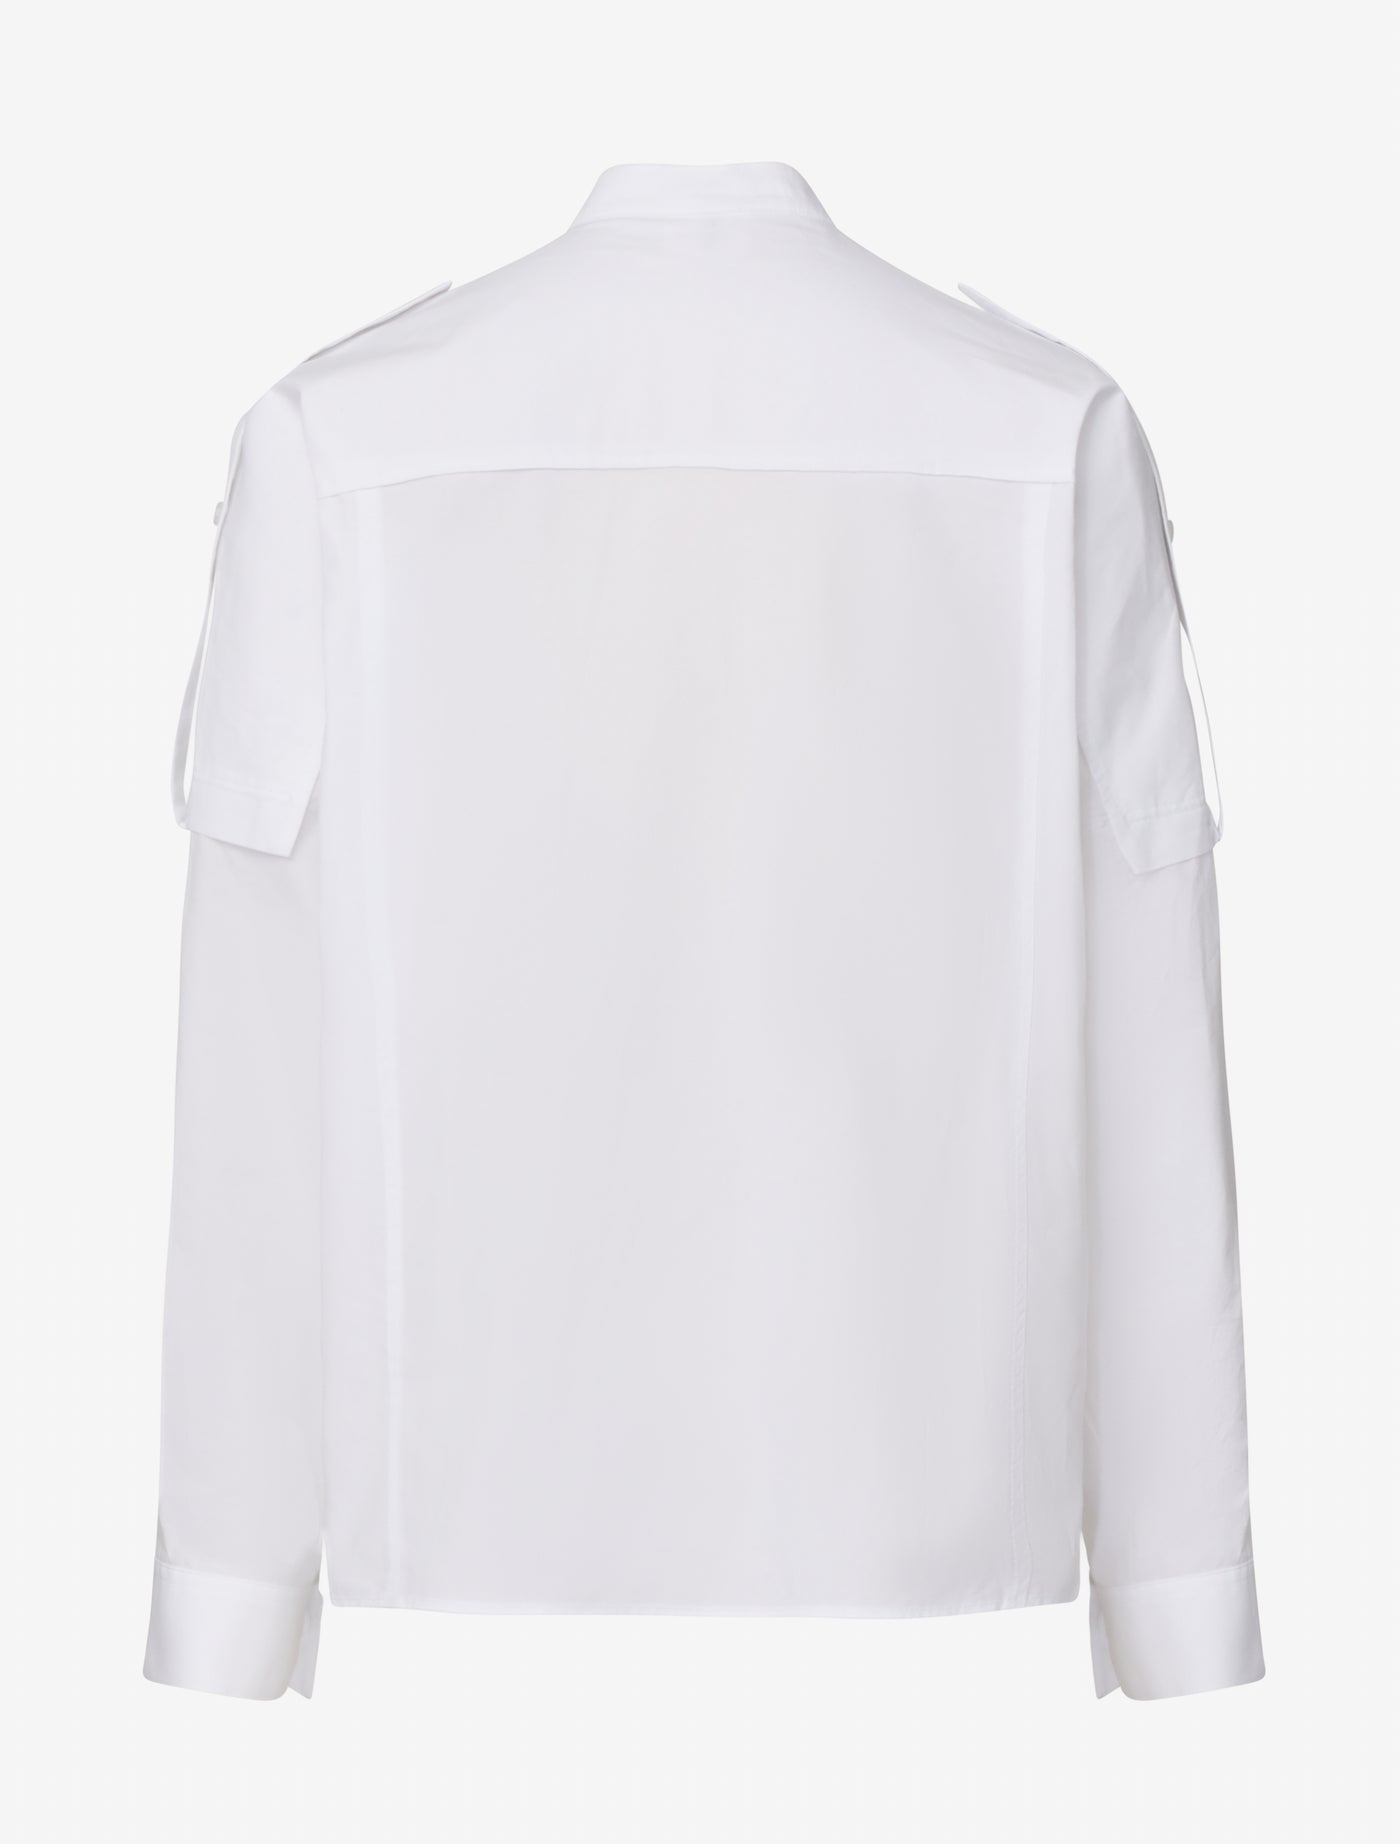 Avery Shirt in Whisper White